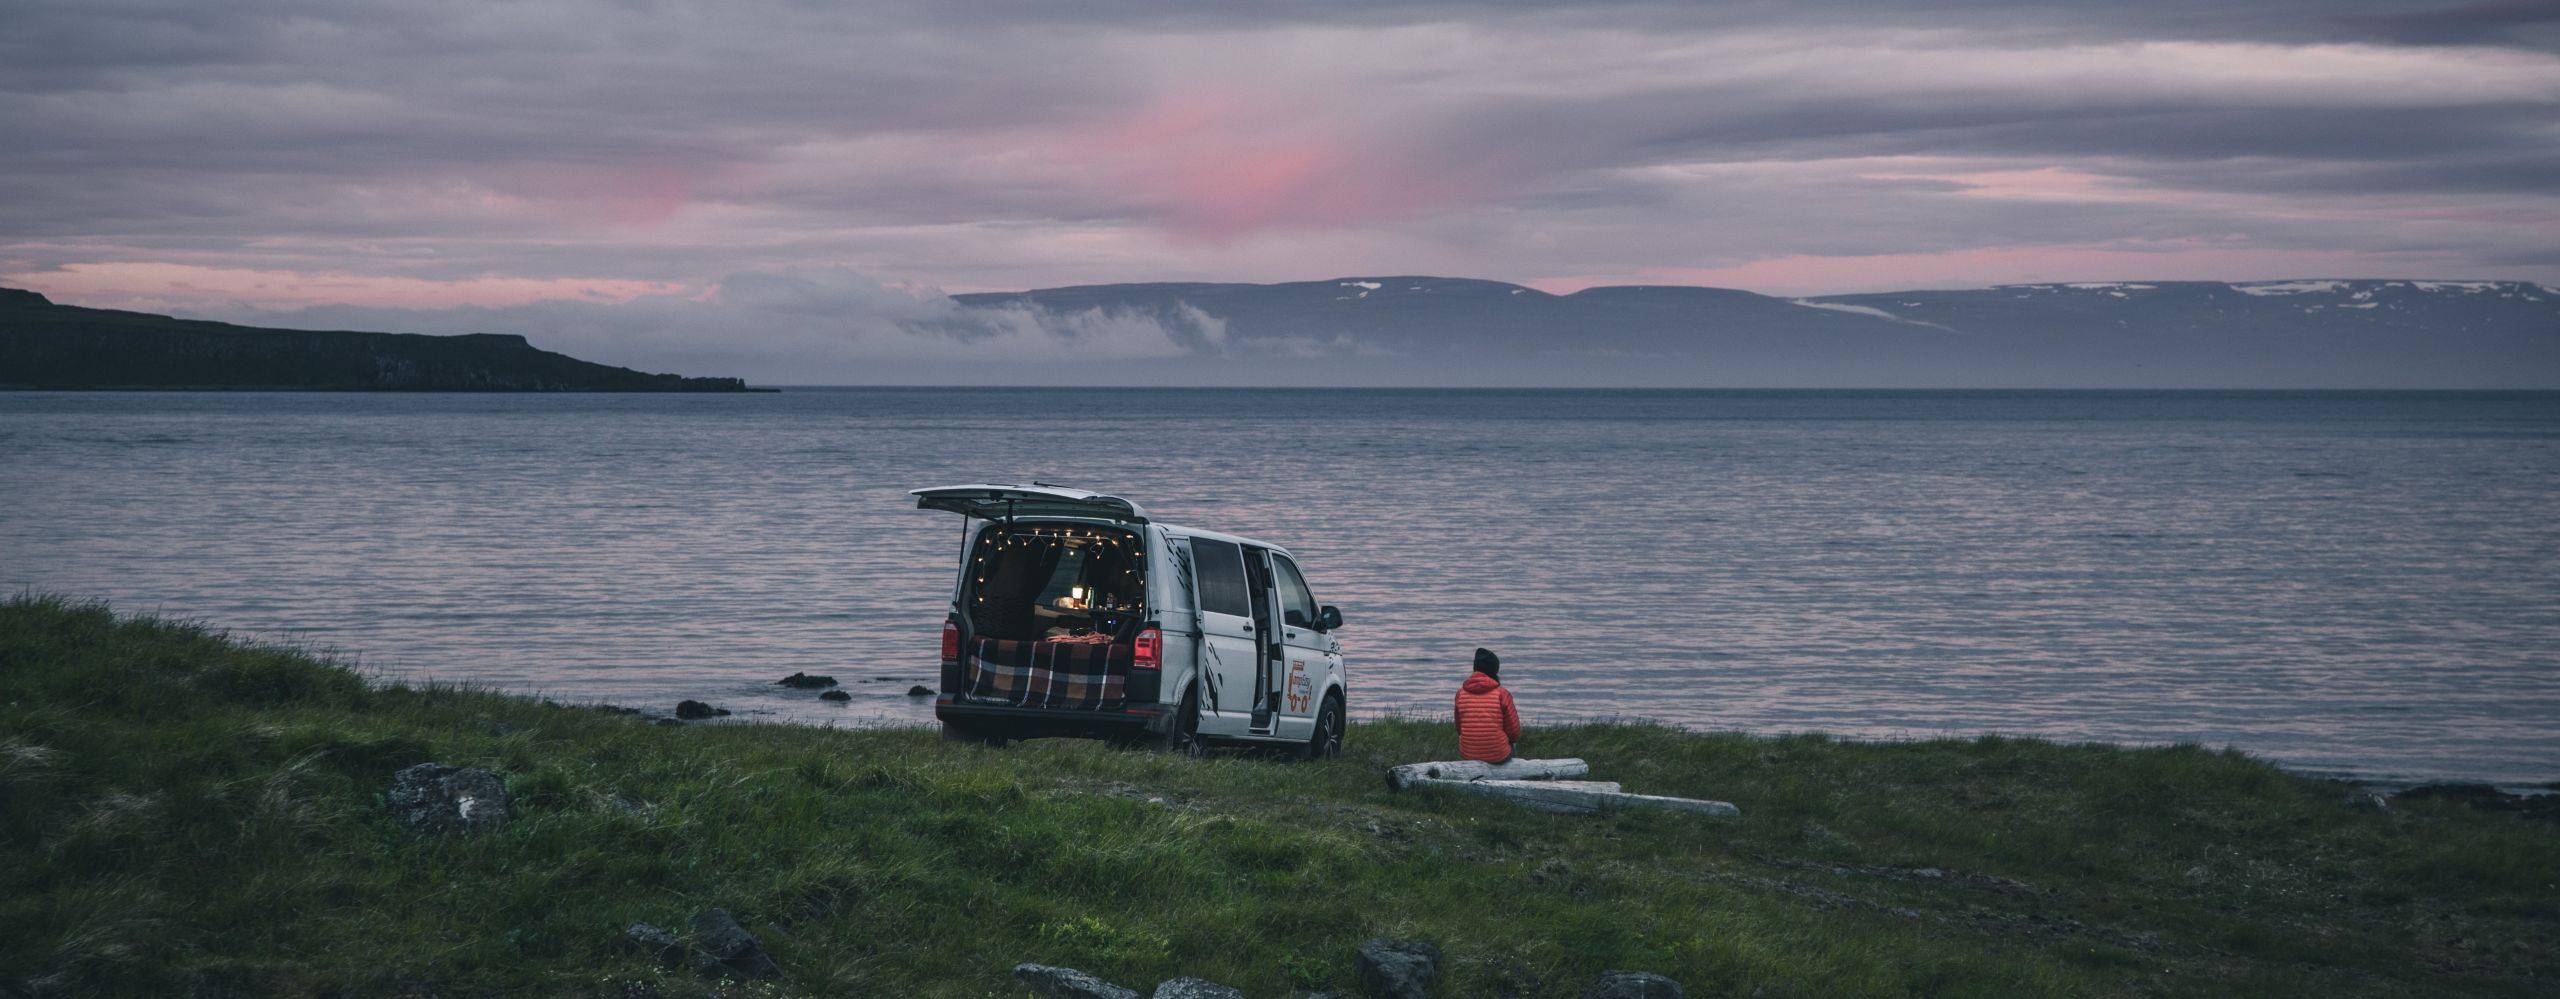 camper van by a lake